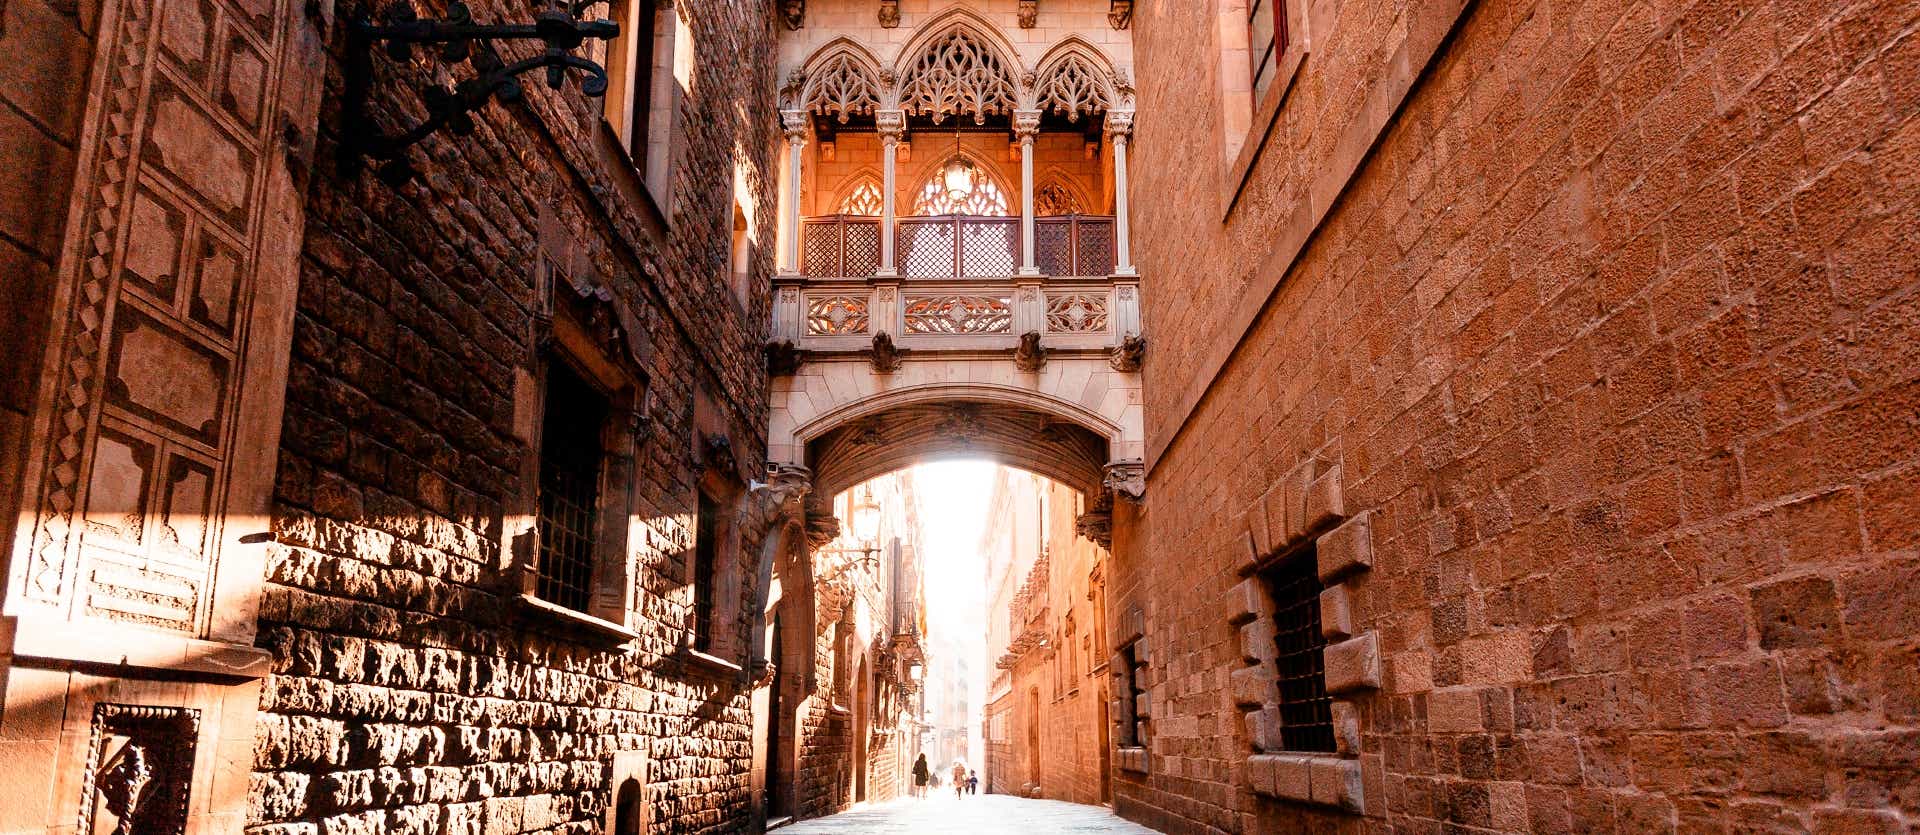 Gothic Quarter <span class="iconos separador"></span> Barcelona